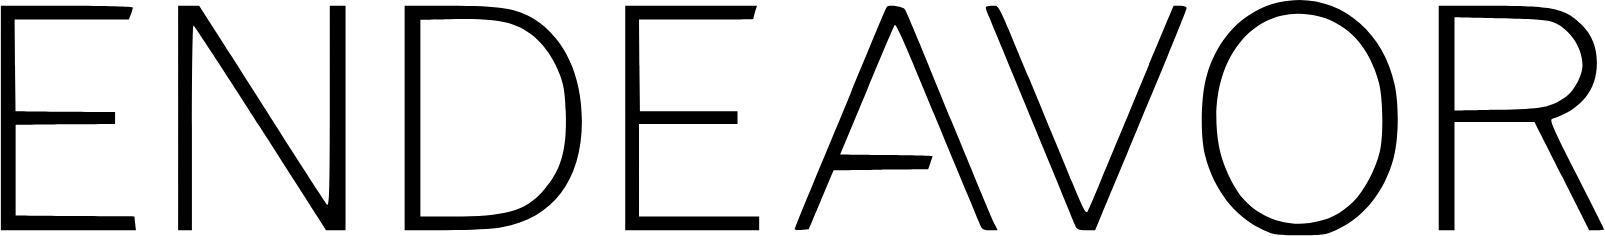 Endeavor Group logo large (transparent PNG)